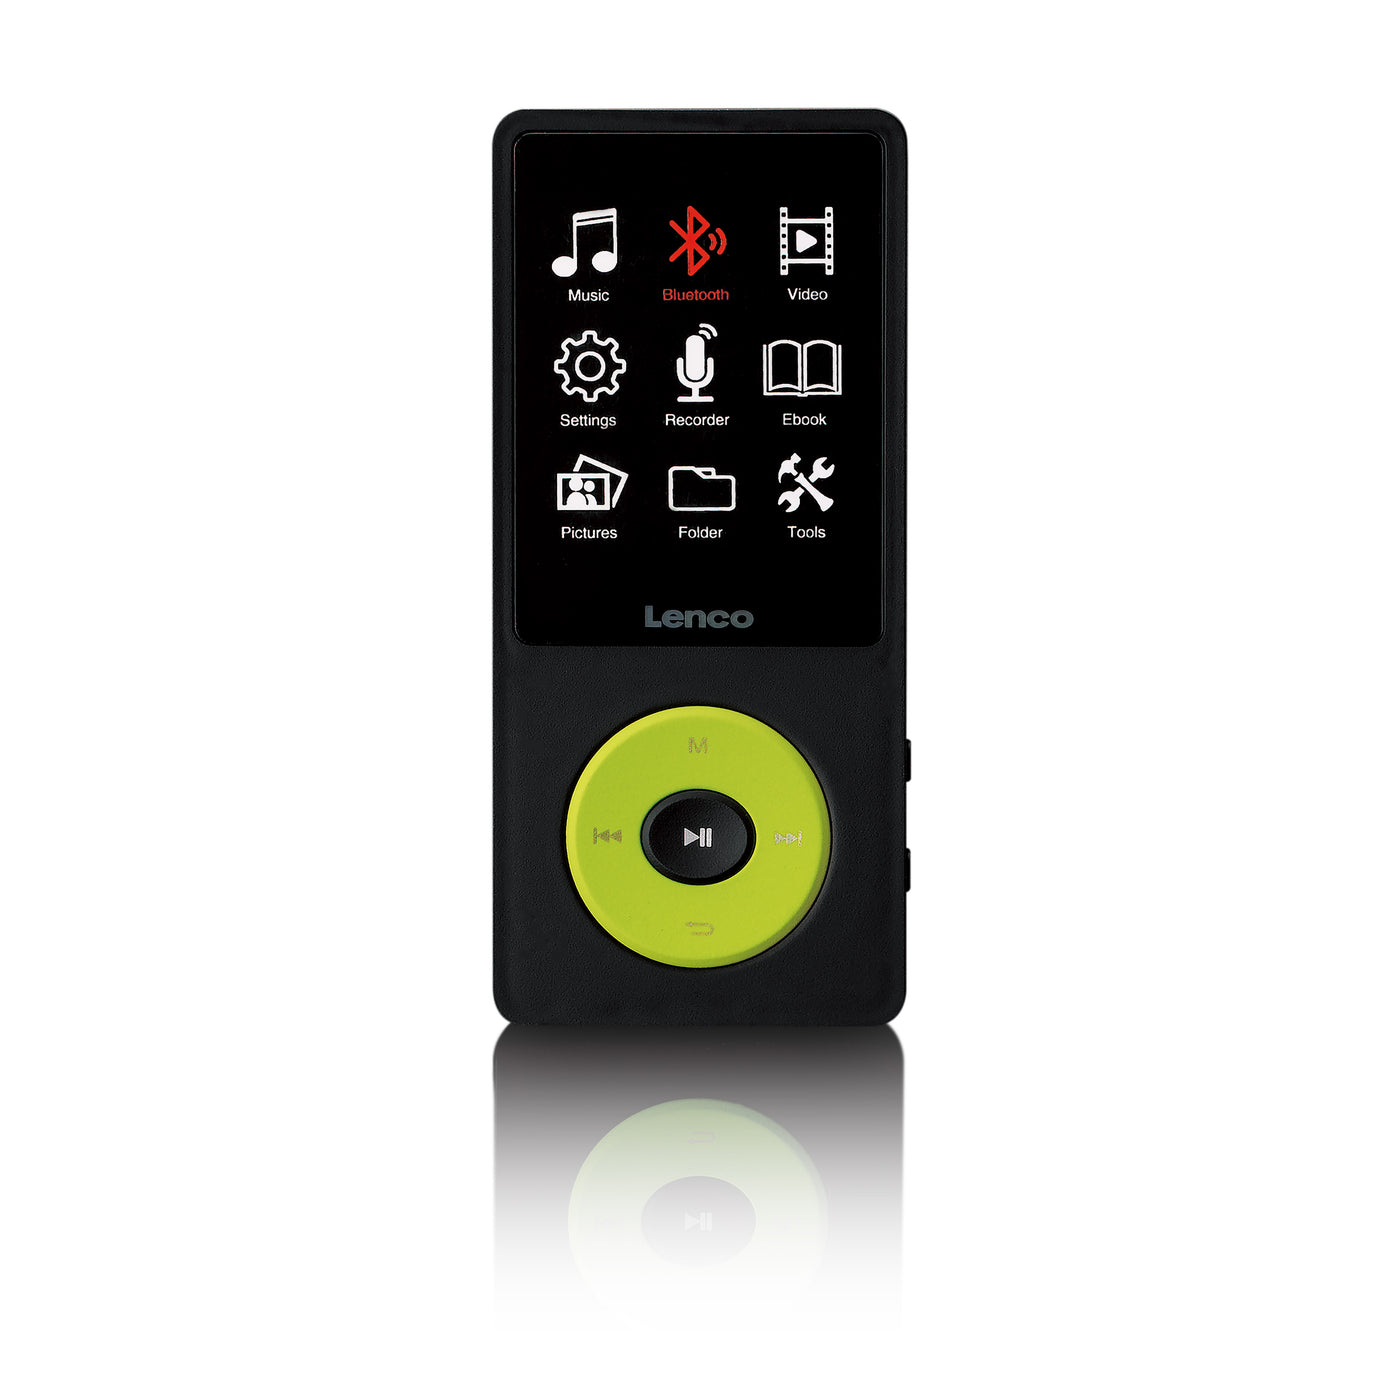 Lenco Xemio-860GN - Lecteur MP3/MP4 avec Bluetooth® et mémoire interne de 8 Go - Vert